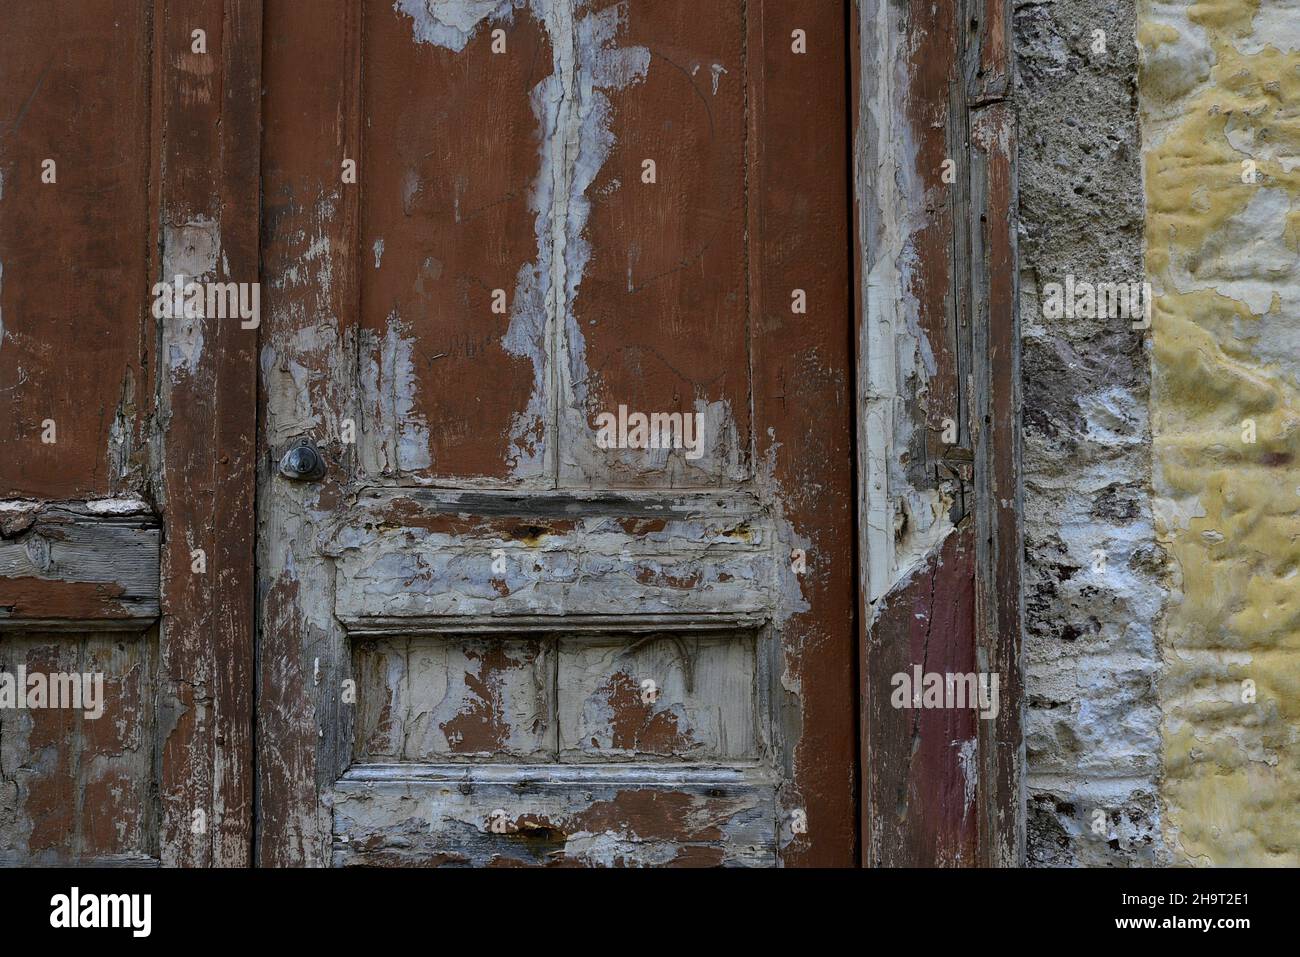 Ancienne porte en bois décolorée contre un mur de pierre ocre abîmé à Nafplio, Grèce. Banque D'Images